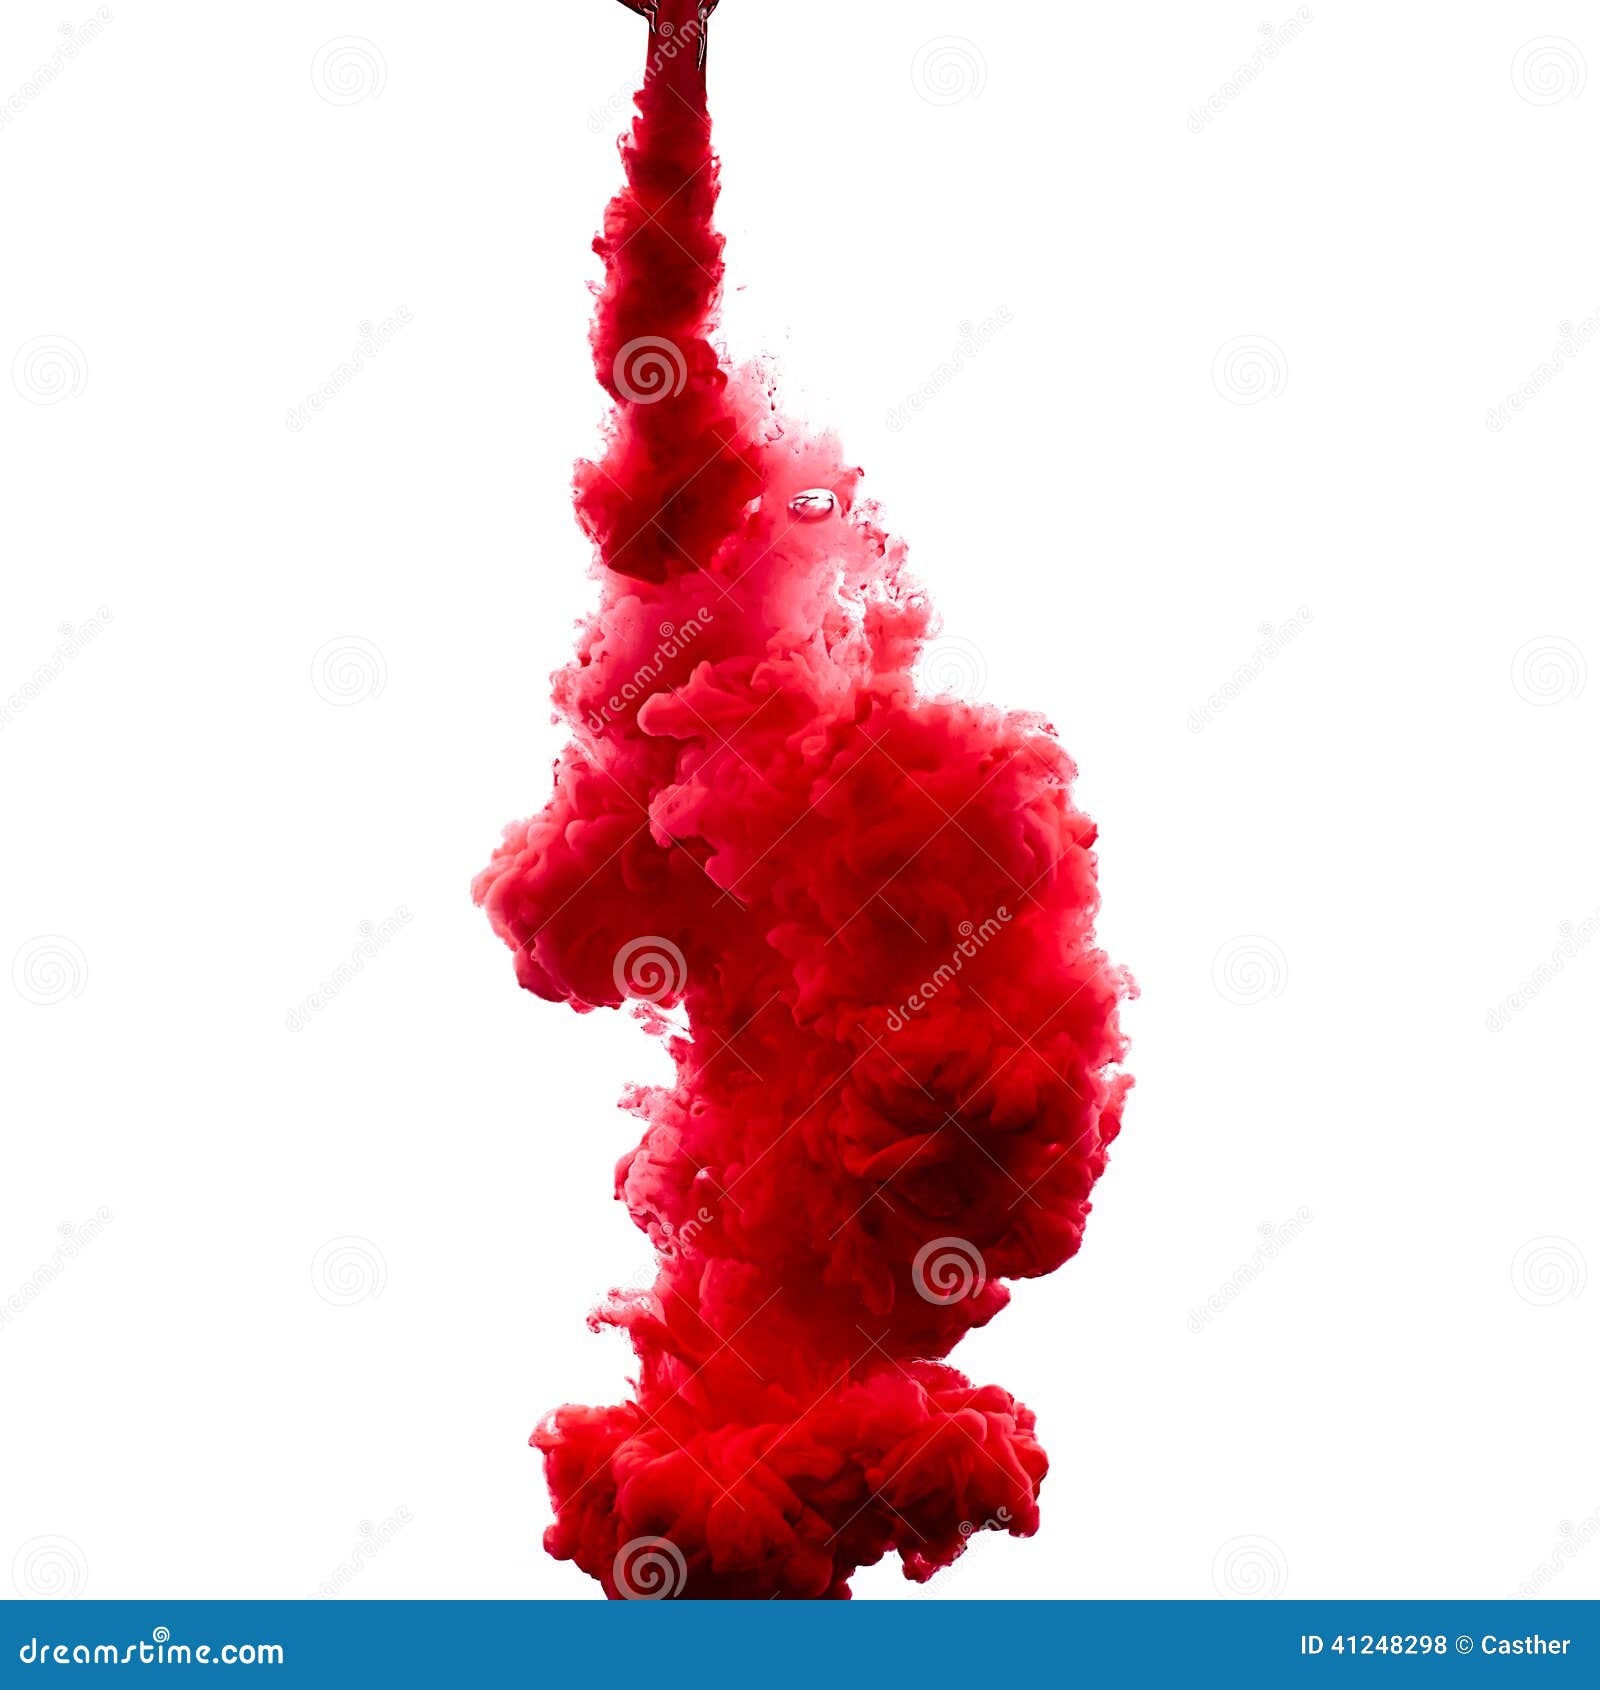 Rött akrylfärgpulver i vatten illustrationen för fractals för explosionen för abstrakt bakgrundsfärg texturerade den digitala. Färgpulver i vatten som isoleras på vit bakgrund